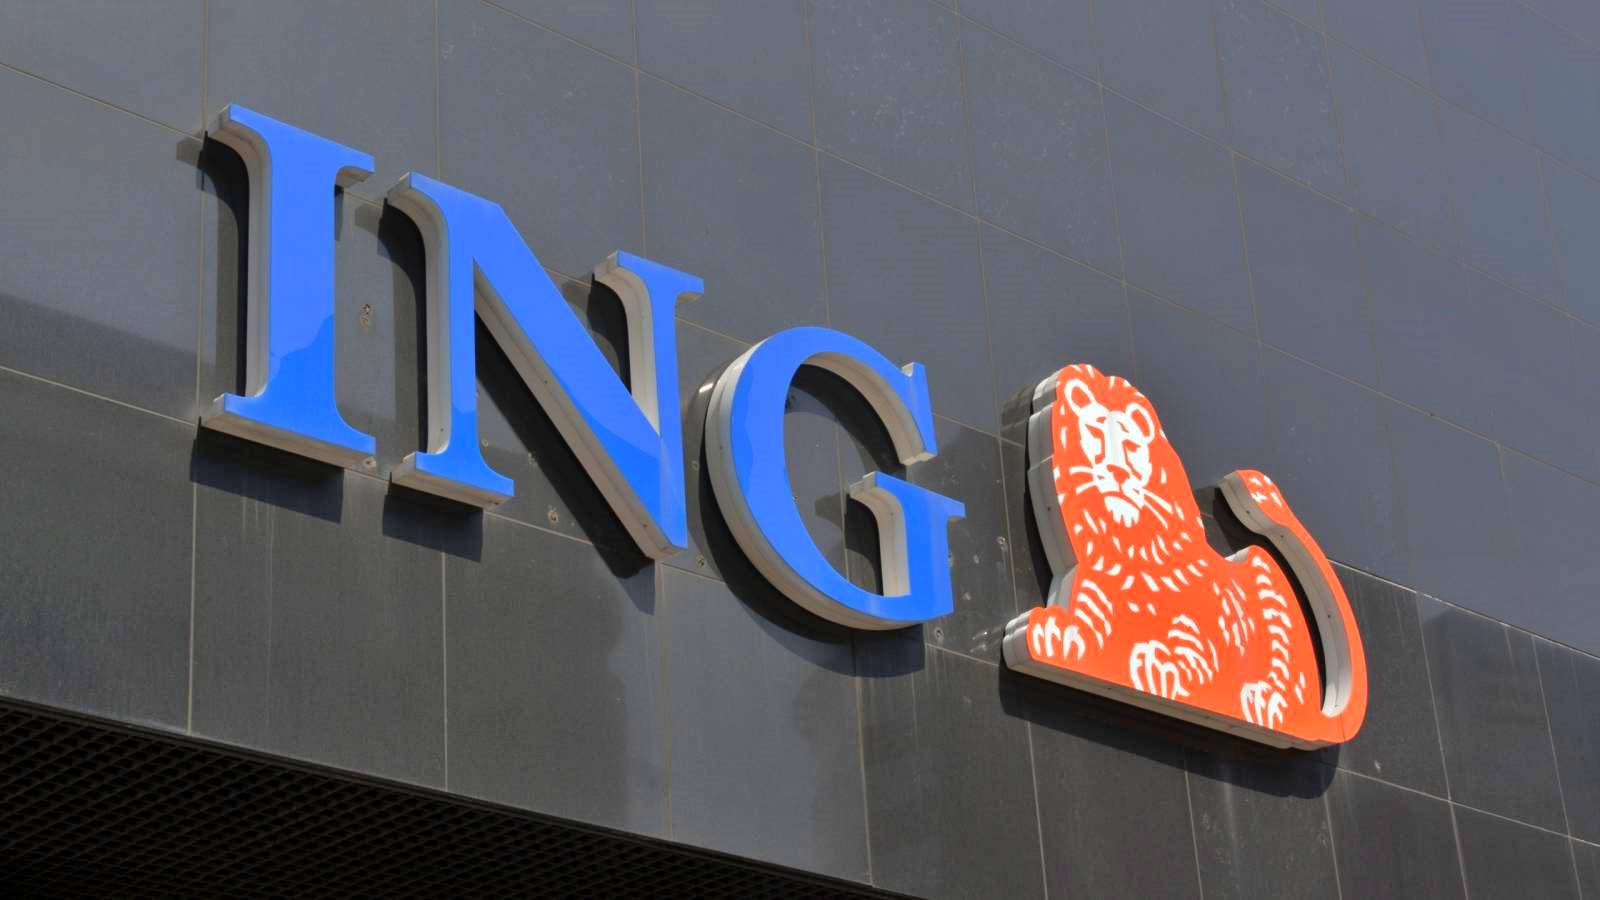 La nueva advertencia del ING Bank apunta a que los clientes deben ser ignorados